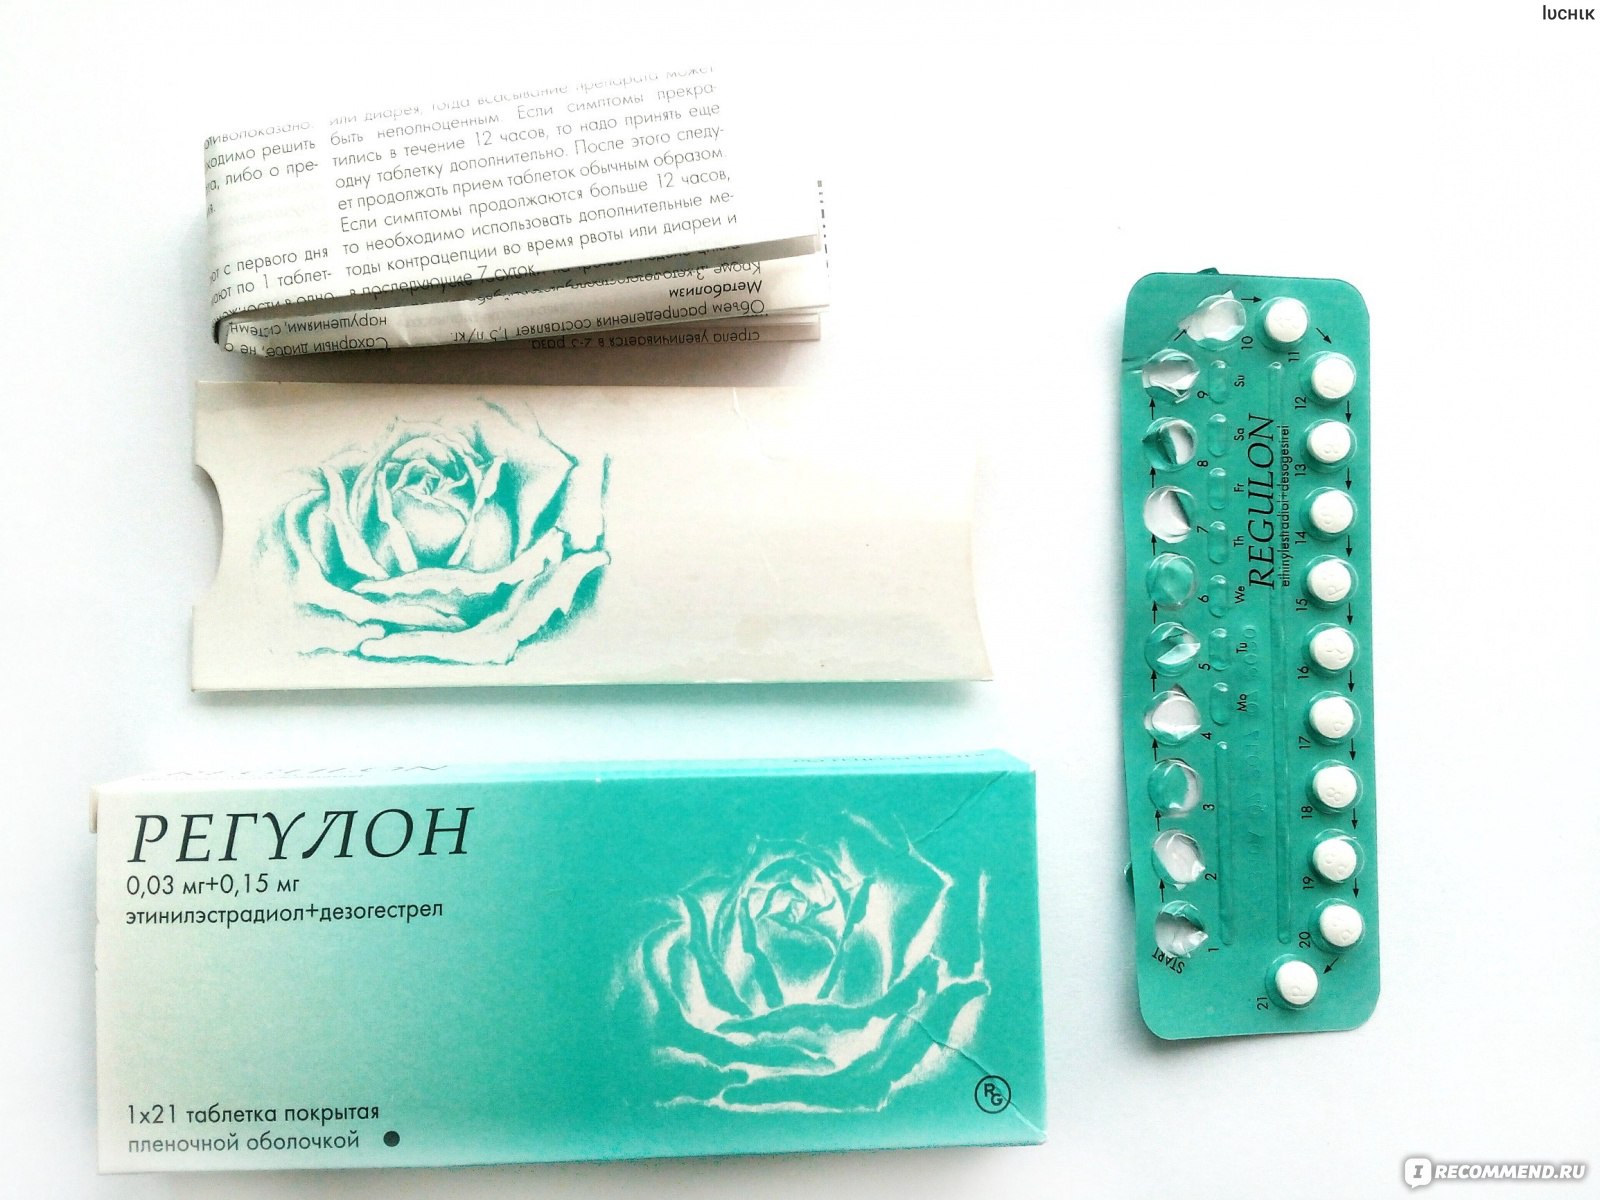 Простые противозачаточные таблетки. Противозачаточные препараты регулон. Гормональные таблетки контрацептивы регулон. Гедеон Рихтер противозачаточные препараты. Противозачаточные таблетки регулон.